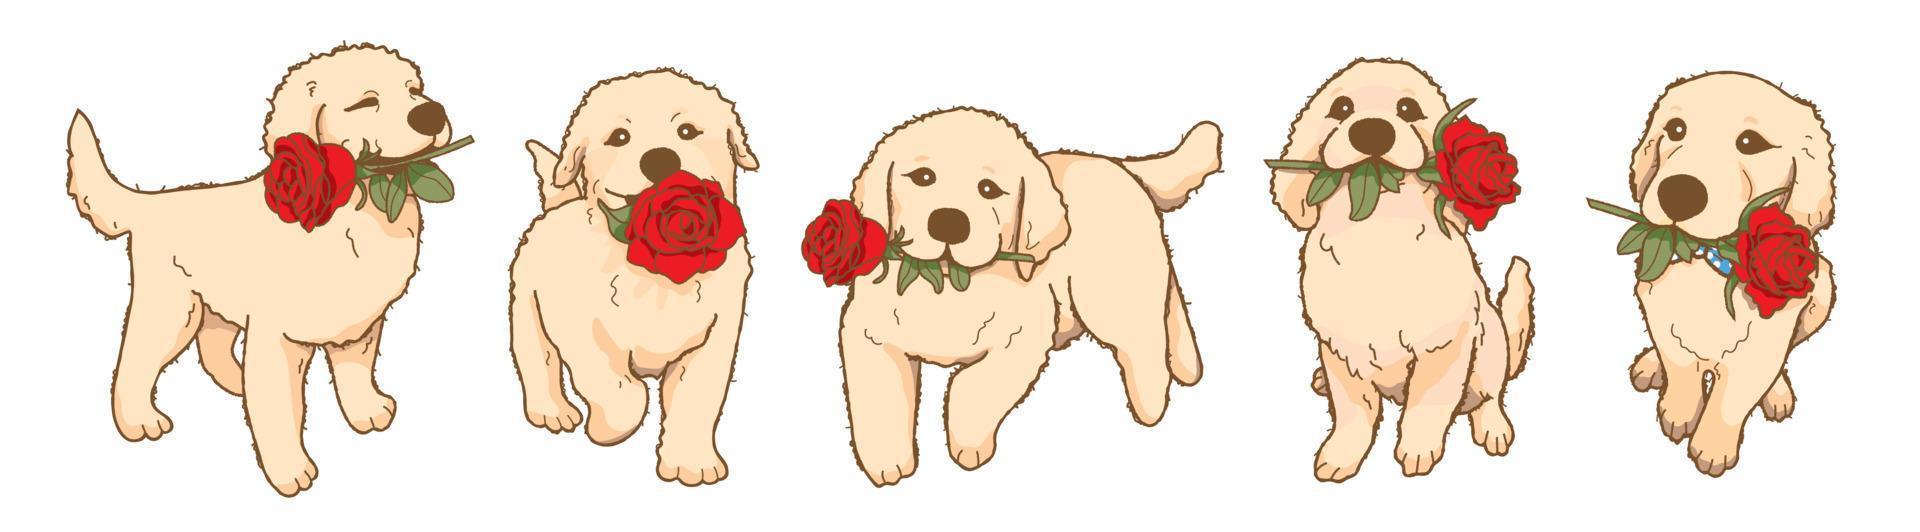 filhote de golden retriever brincalhão dos desenhos animados segurando flor rosa vermelha na boca, adorável cachorro apaixonado vetor